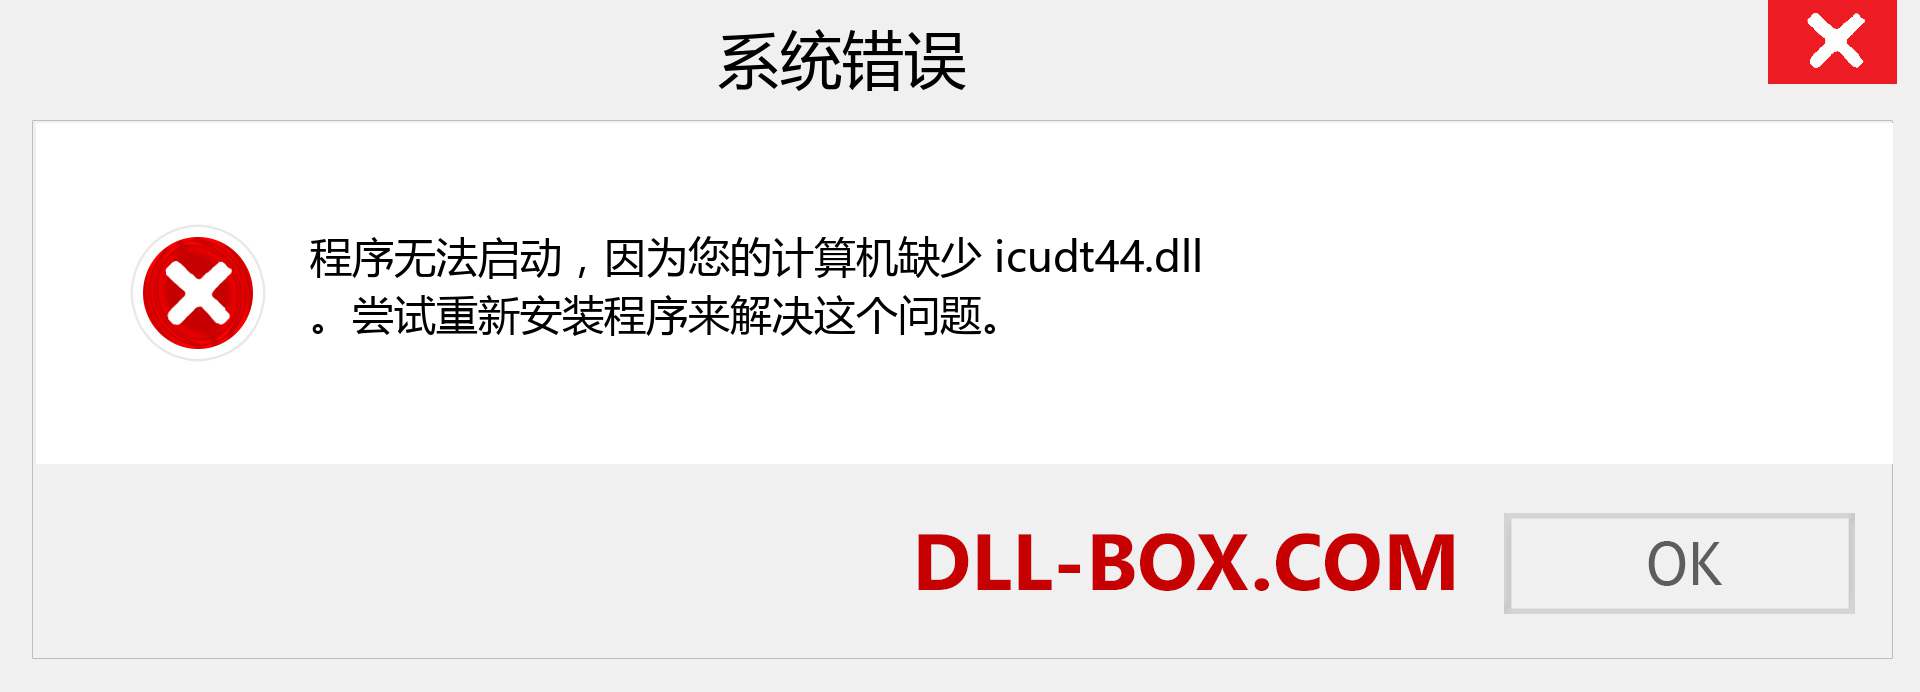 icudt44.dll 文件丢失？。 适用于 Windows 7、8、10 的下载 - 修复 Windows、照片、图像上的 icudt44 dll 丢失错误